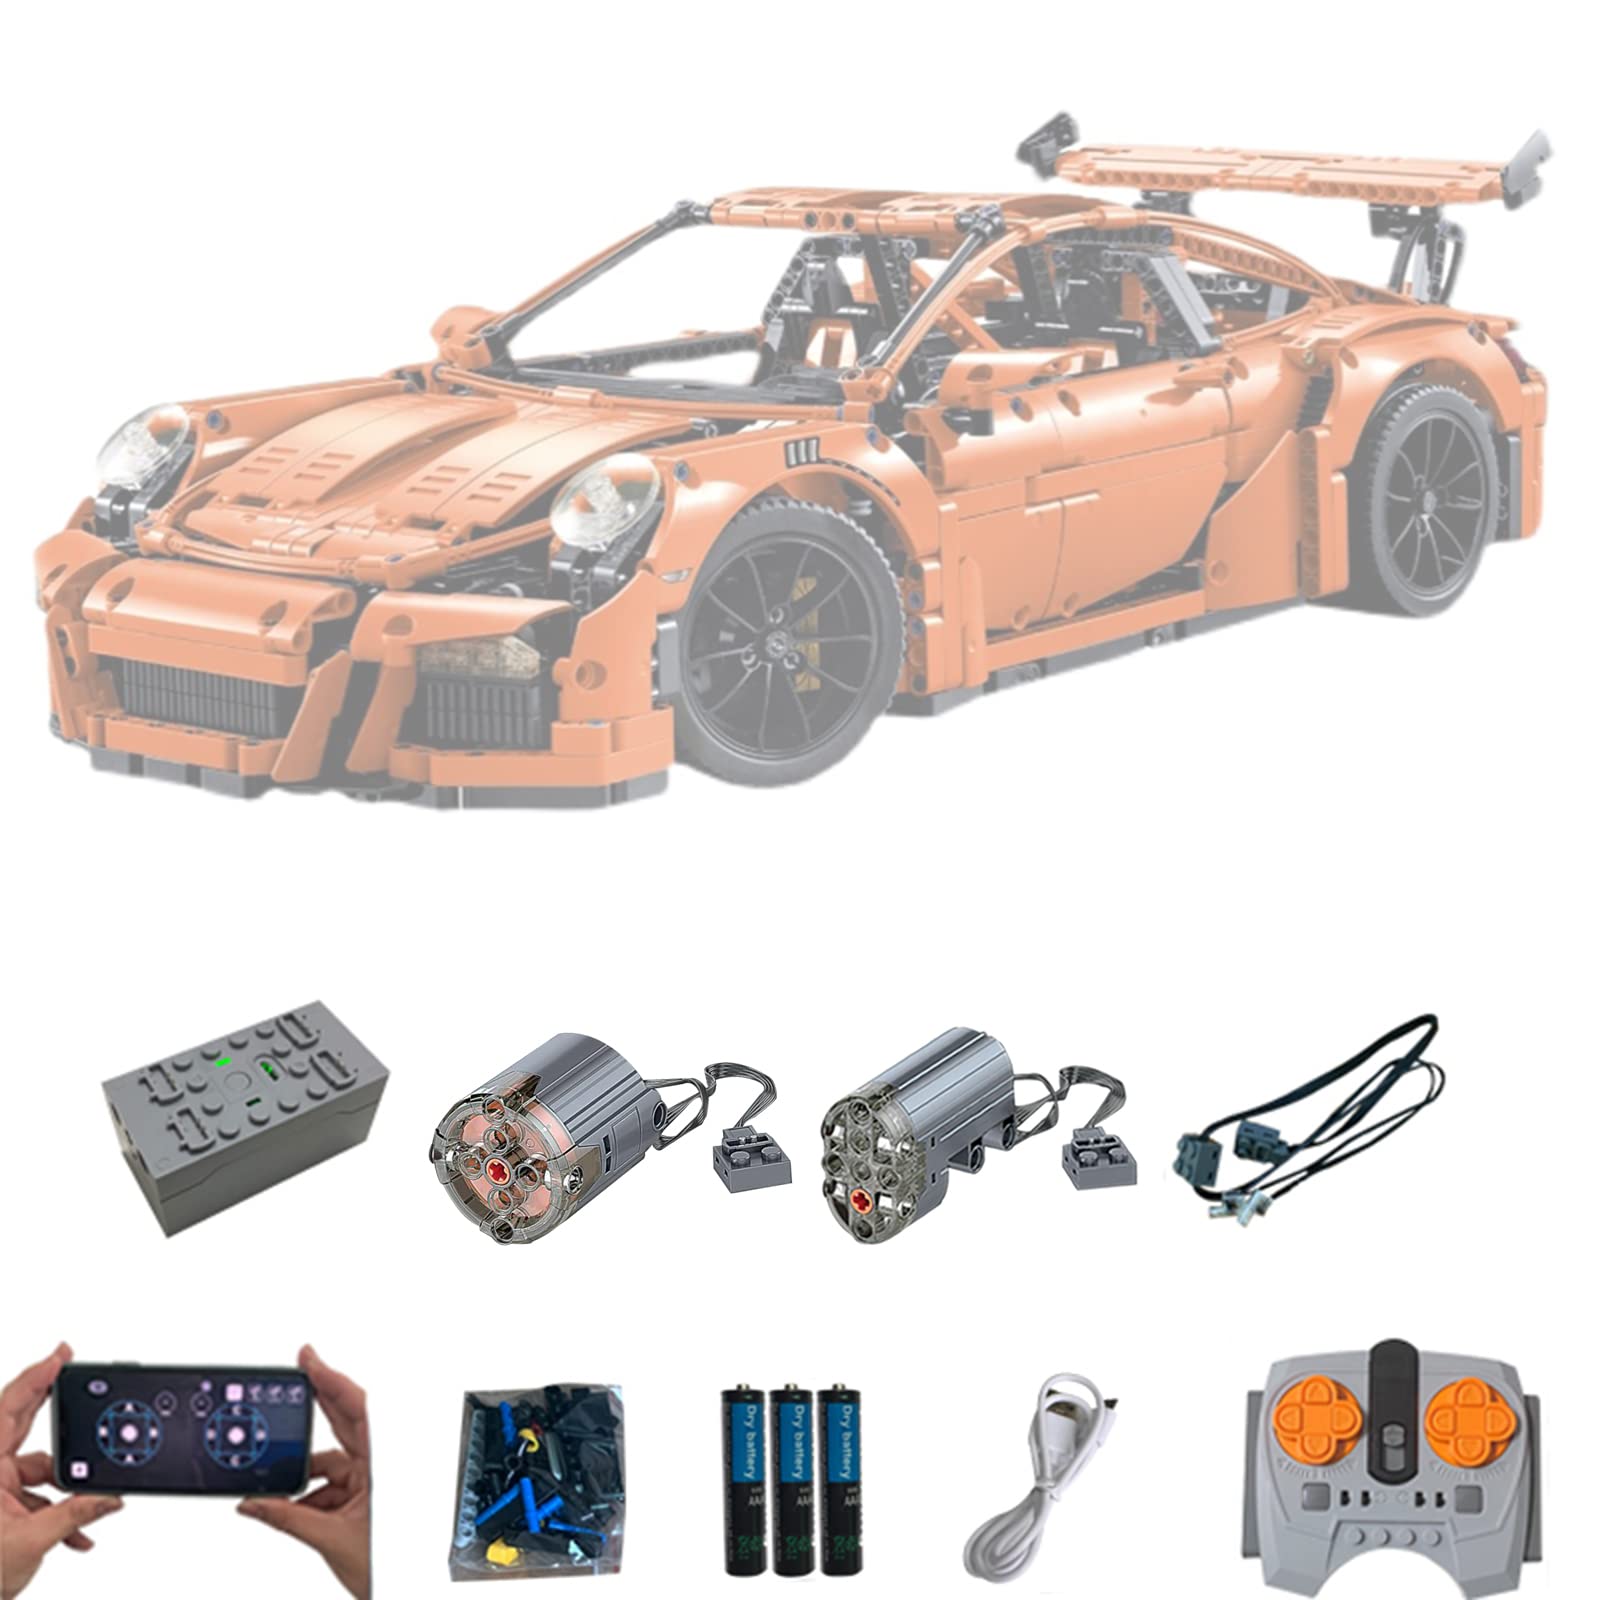 Super Motor und Fernbedienung Upgrade Zubehör für Lego Technic 42056 Porsche 911 GT3 RS, Fernbedienung und APP-Steuerung, Power Functions Motor Set Kompatibel mit Lego 42056(Nicht Enthalten Modell)